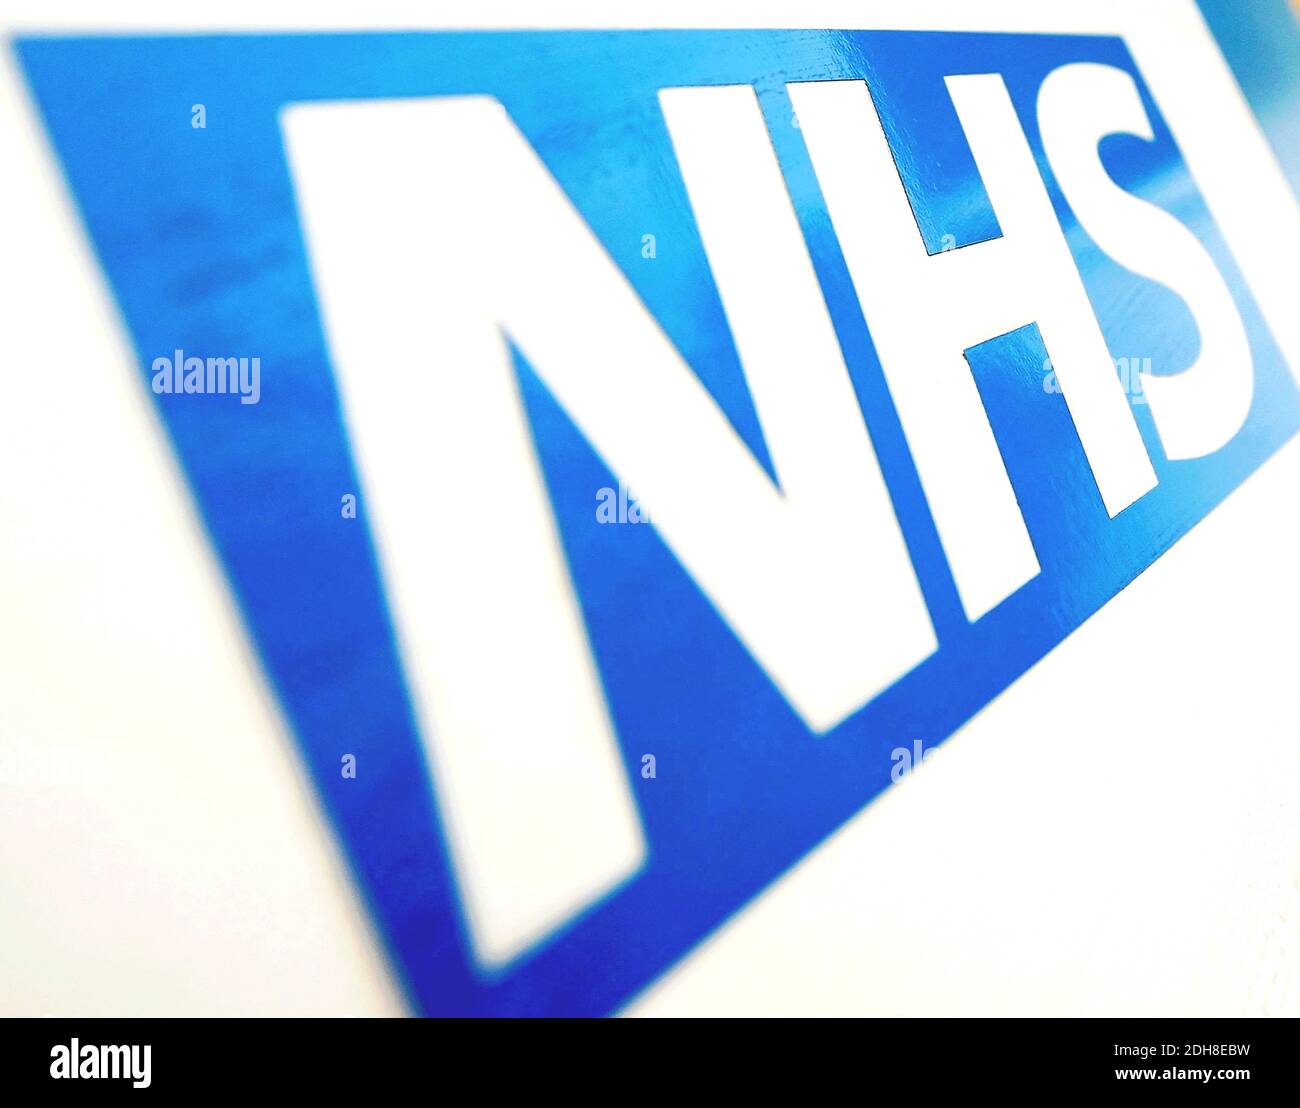 Photo du dossier datée du 06/11/10 du logo NHS. De nouvelles données montrent que le nombre de personnes ayant à attendre plus de 52 semaines pour commencer un traitement hospitalier en Angleterre continue d'augmenter. Banque D'Images